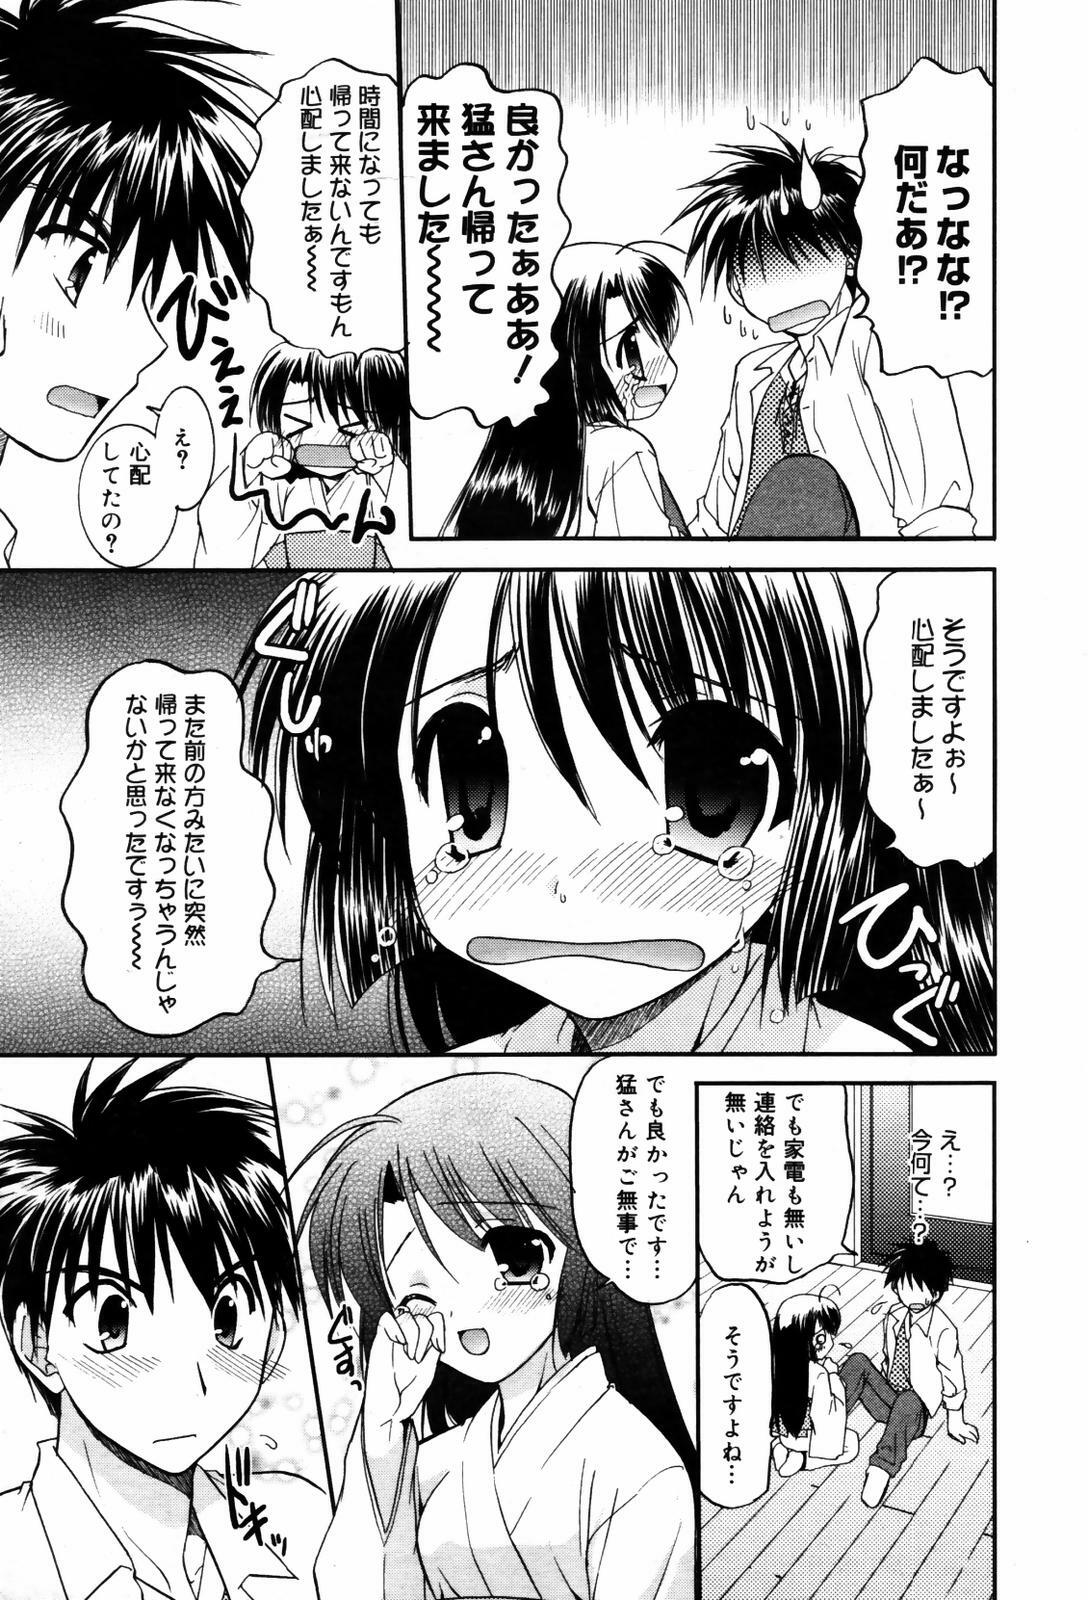 Manga Bangaichi 2007-09 page 29 full